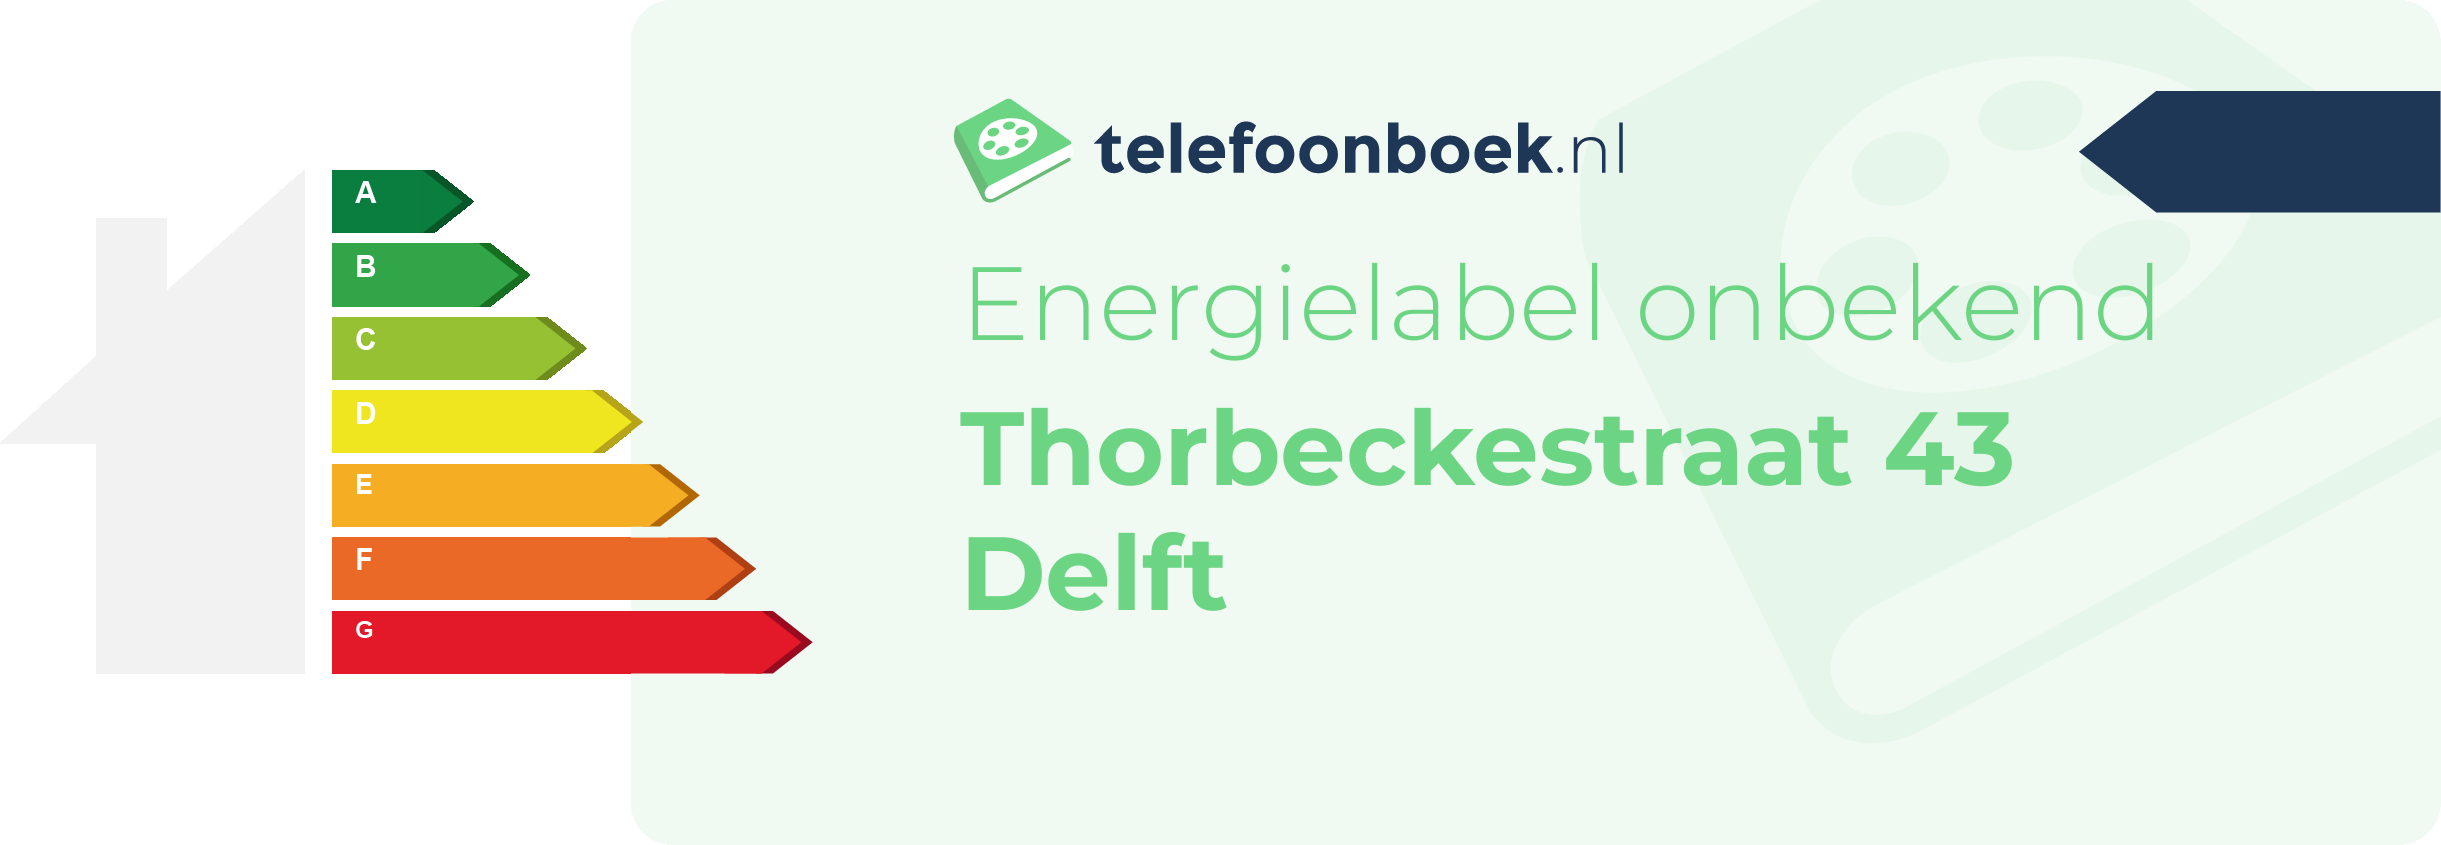 Energielabel Thorbeckestraat 43 Delft